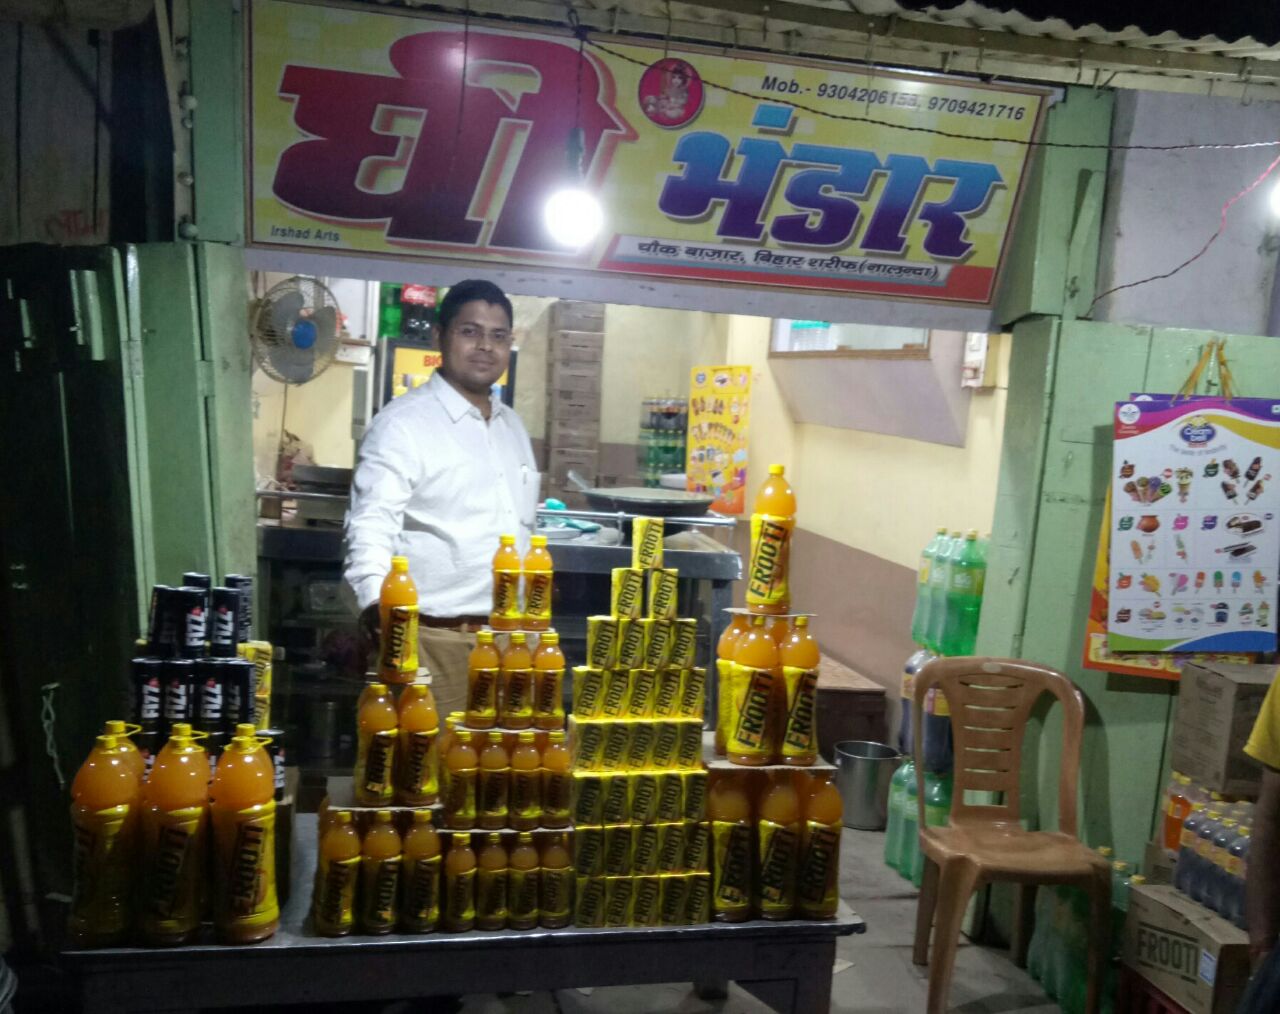 नालंदा बिहारशरीफ में होली के त्यौहार के मौके पर ठंडे पेय पदार्थ की बिक्री पर एक अबीर का पैकेट नि:शुल्क वितरित किया जा रहा